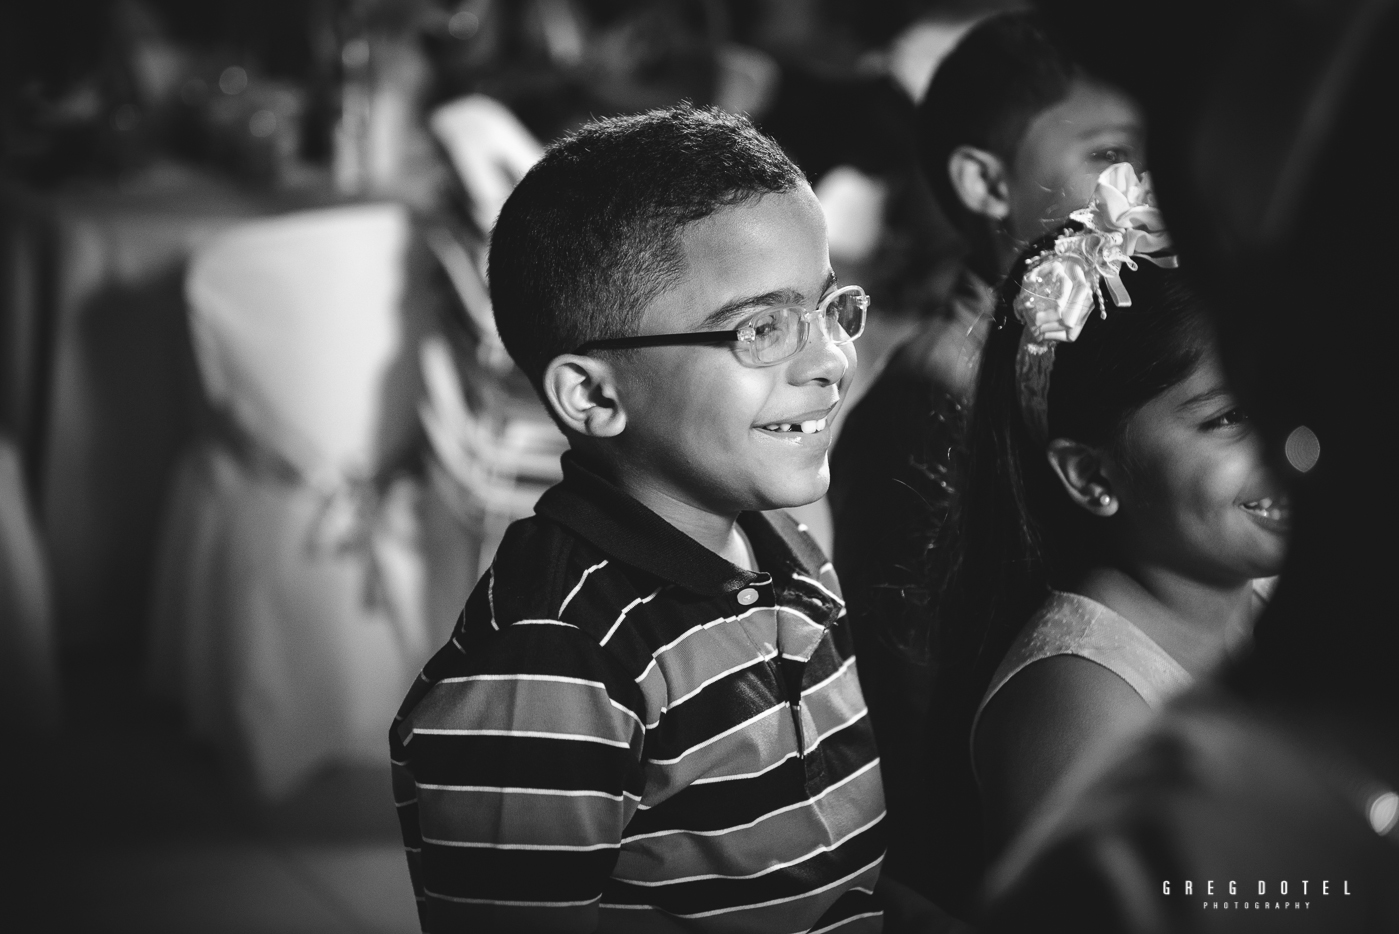 Fotografo de cumpleaños para niños y niñas en santo domingo republica dominicana